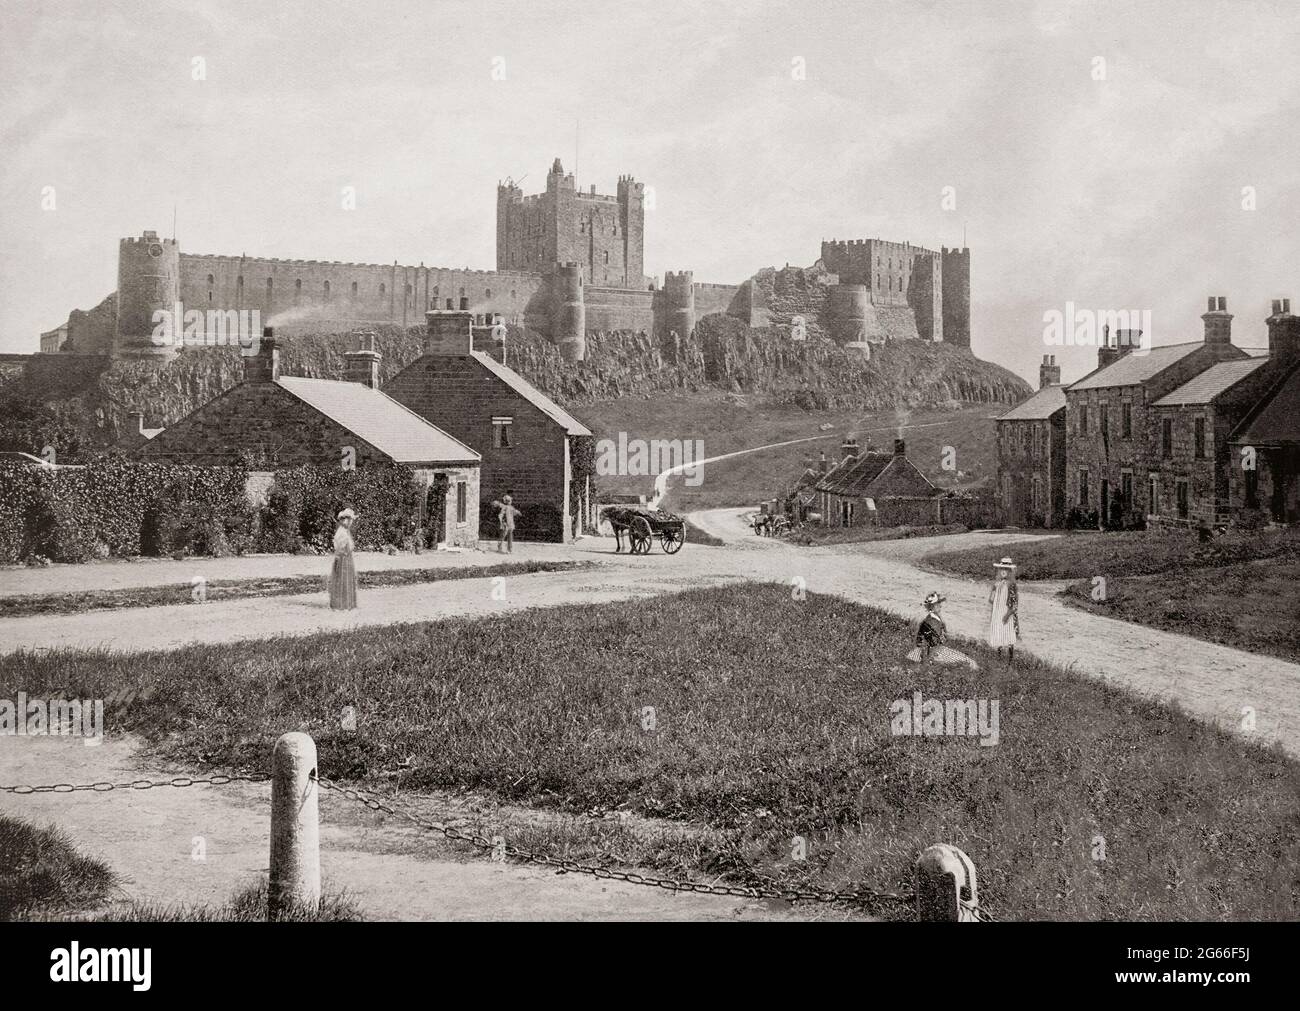 Una vista del tardo 19 ° secolo del villaggio sotto il Castello di Bamburgh in Northumberland, Inghilterra. I Normanni costruirono un nuovo castello sul sito, ed Enrico II probabilmente costruì il castello così come fu completato entro il 1164. Nel 1464, durante le Guerre delle Rose, divenne il primo castello in Inghilterra ad essere sconfitto dall'artiglieria, alla fine di un assedio di nove mesi da parte di Richard Neville, sedicesimo conte di Warwick, il 'Kingmaker', per conto degli Yorkisti. Nel 1894, il castello fu acquistato dall'industriale vittoriano William Armstrong, che completò il restauro. Foto Stock